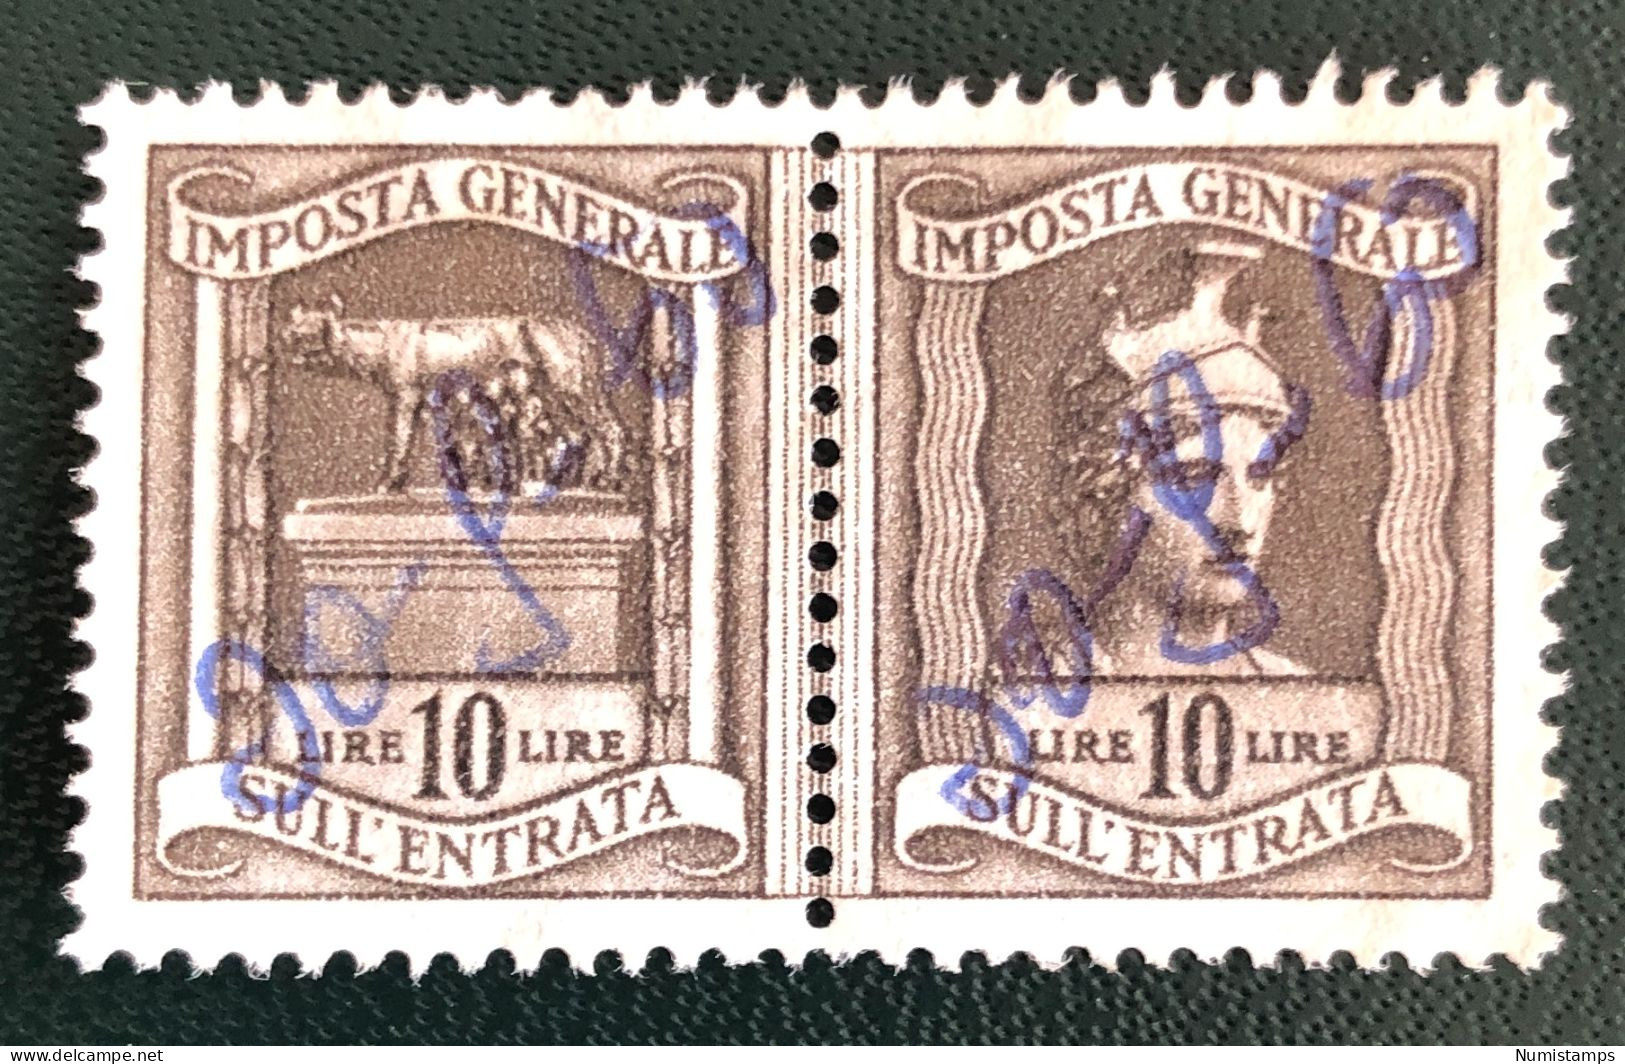 Imposta Generale Sull'entrata - Lire 10 - Revenue Stamps